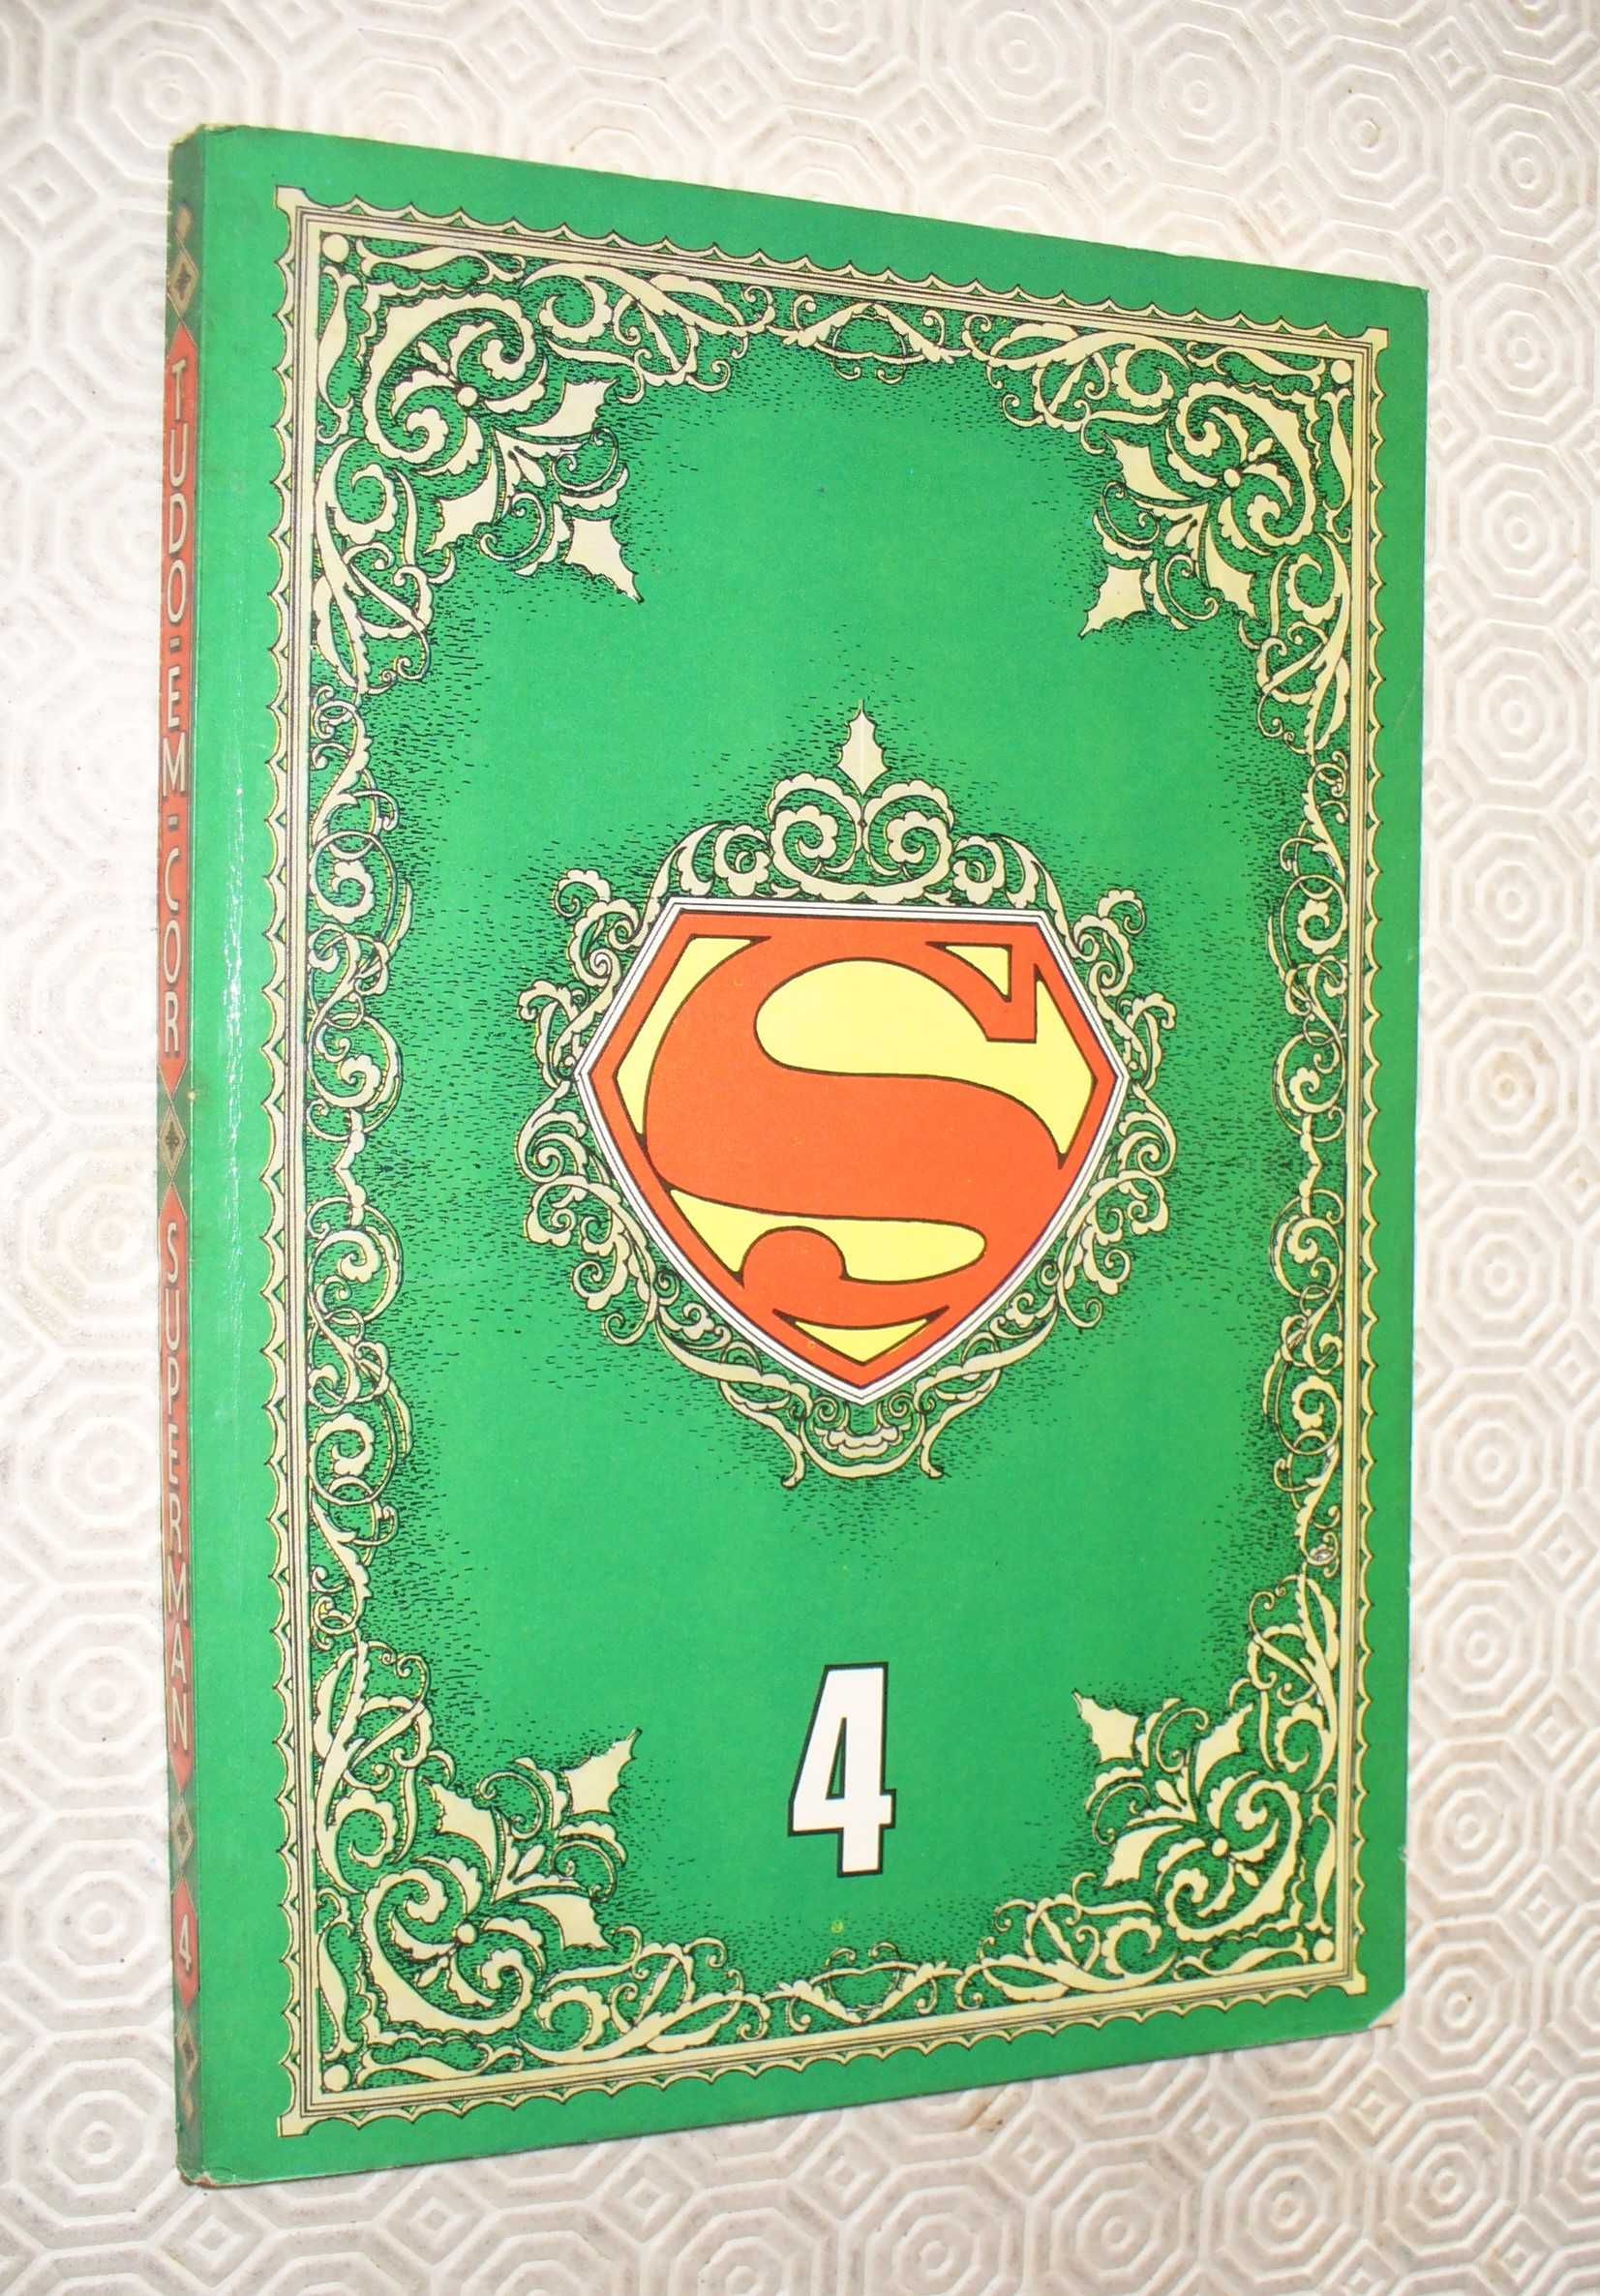 Superman Tudo em Cores - Álbum nº 4 - EBAL